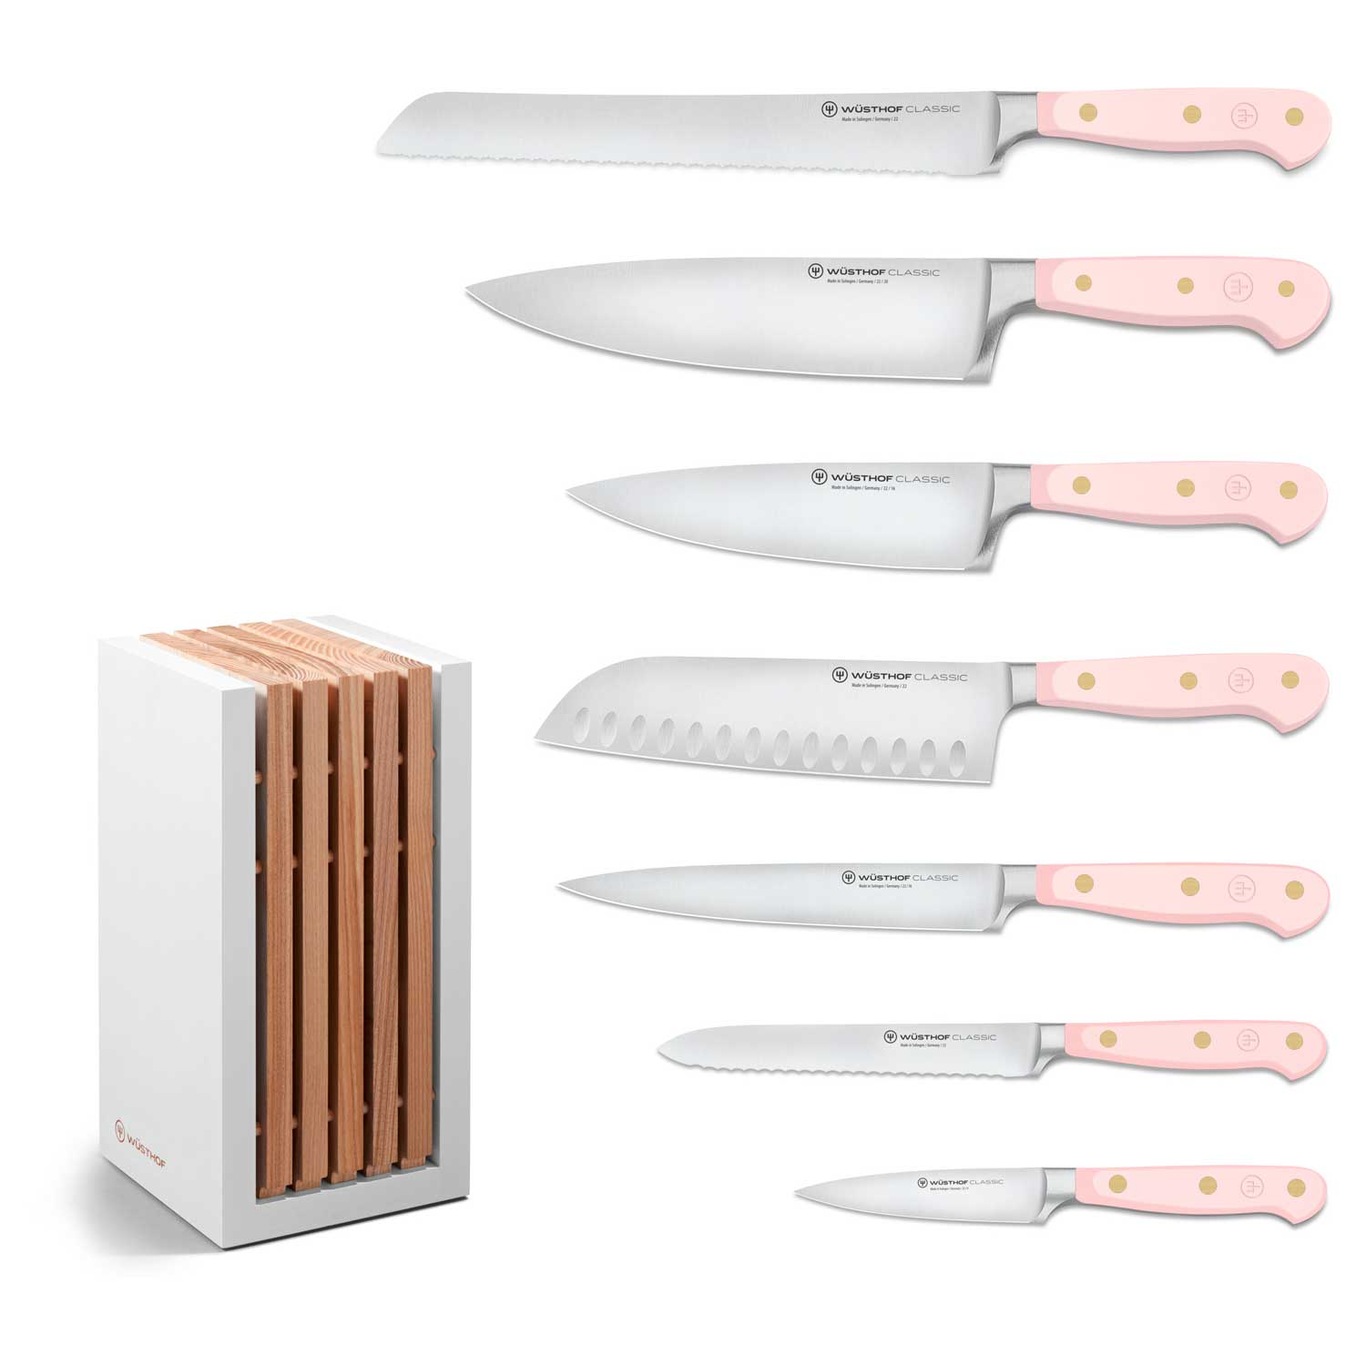 Classic Colour Knife Set With Knife Block 8 Pieces, Pink Himalayan Salt